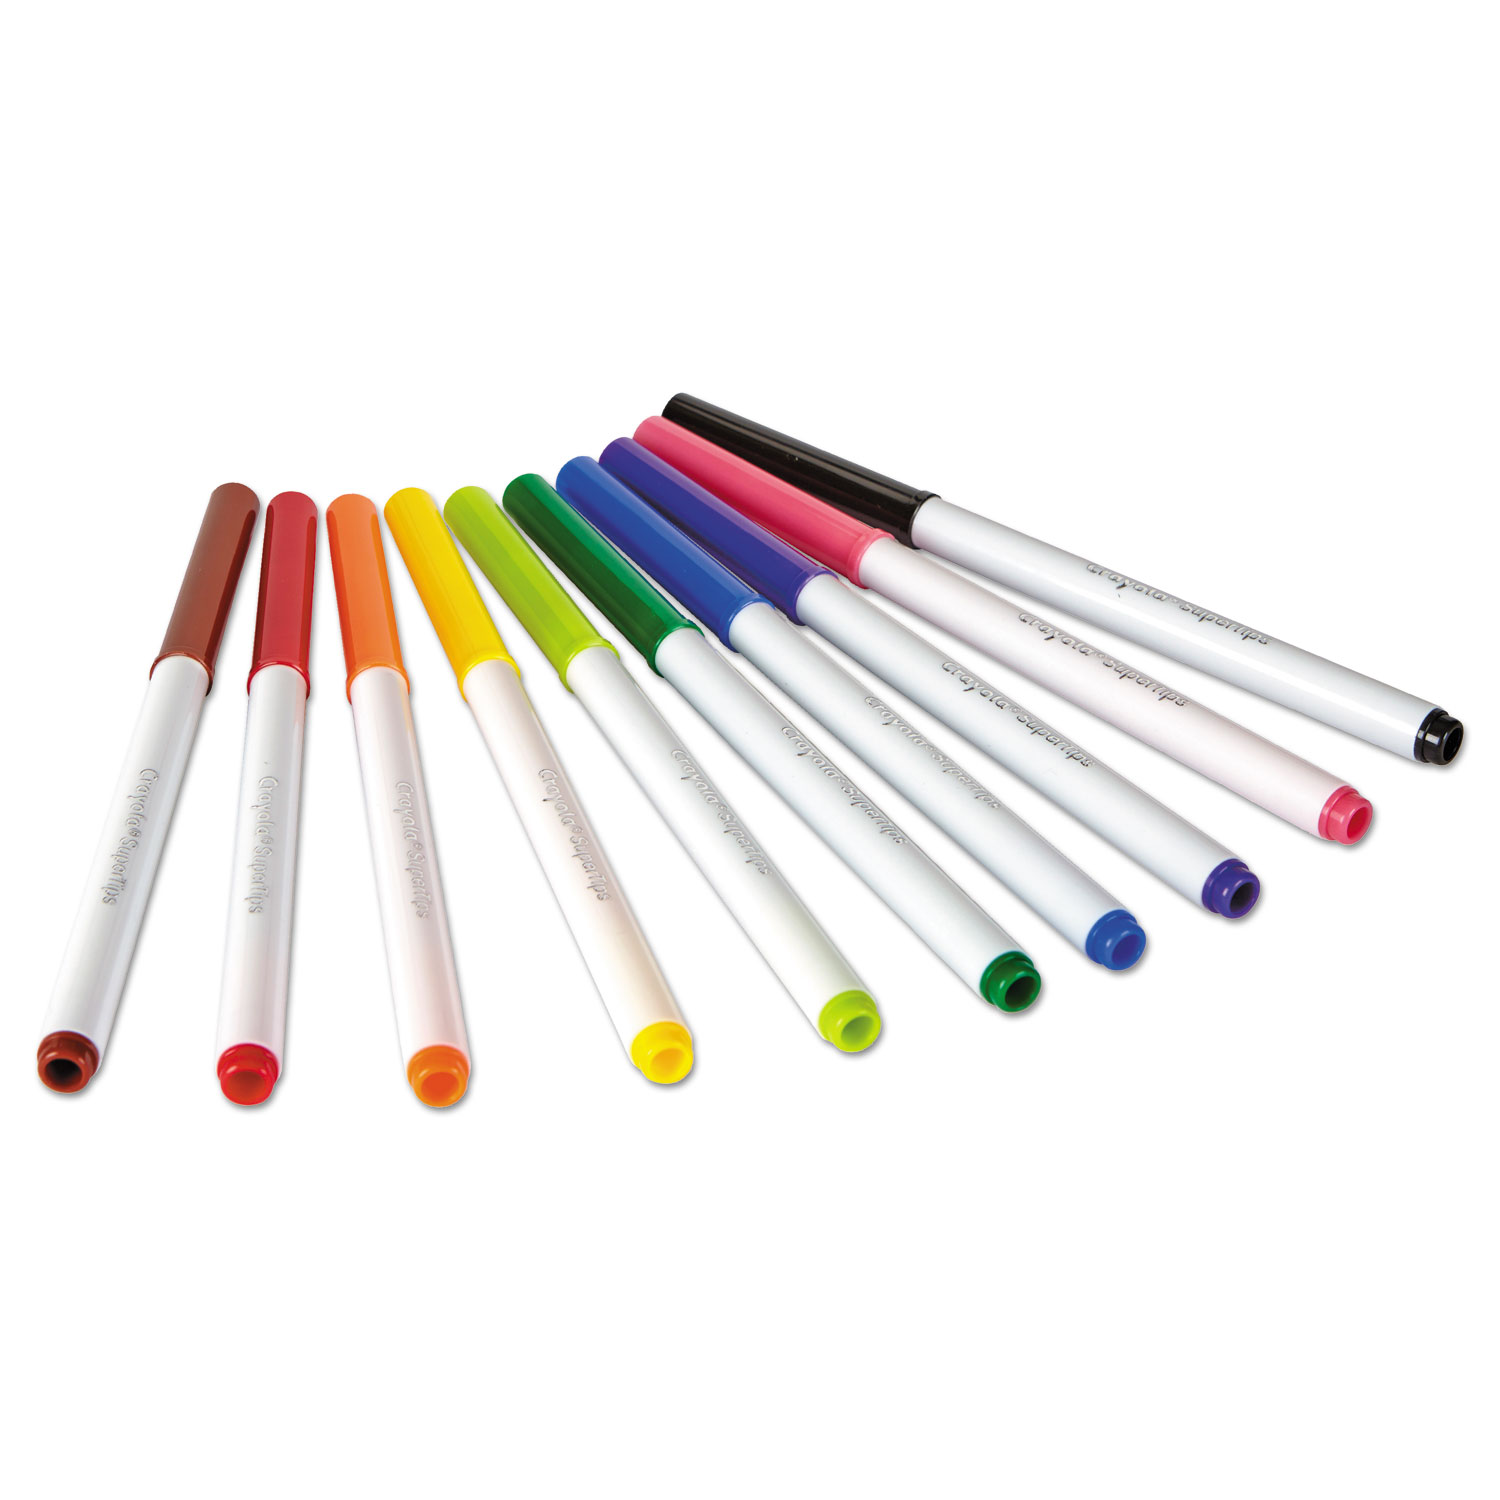 Super Tips Washable Markers, Broad/Fine Bullet Tip, Assorted Colors, 100/Set